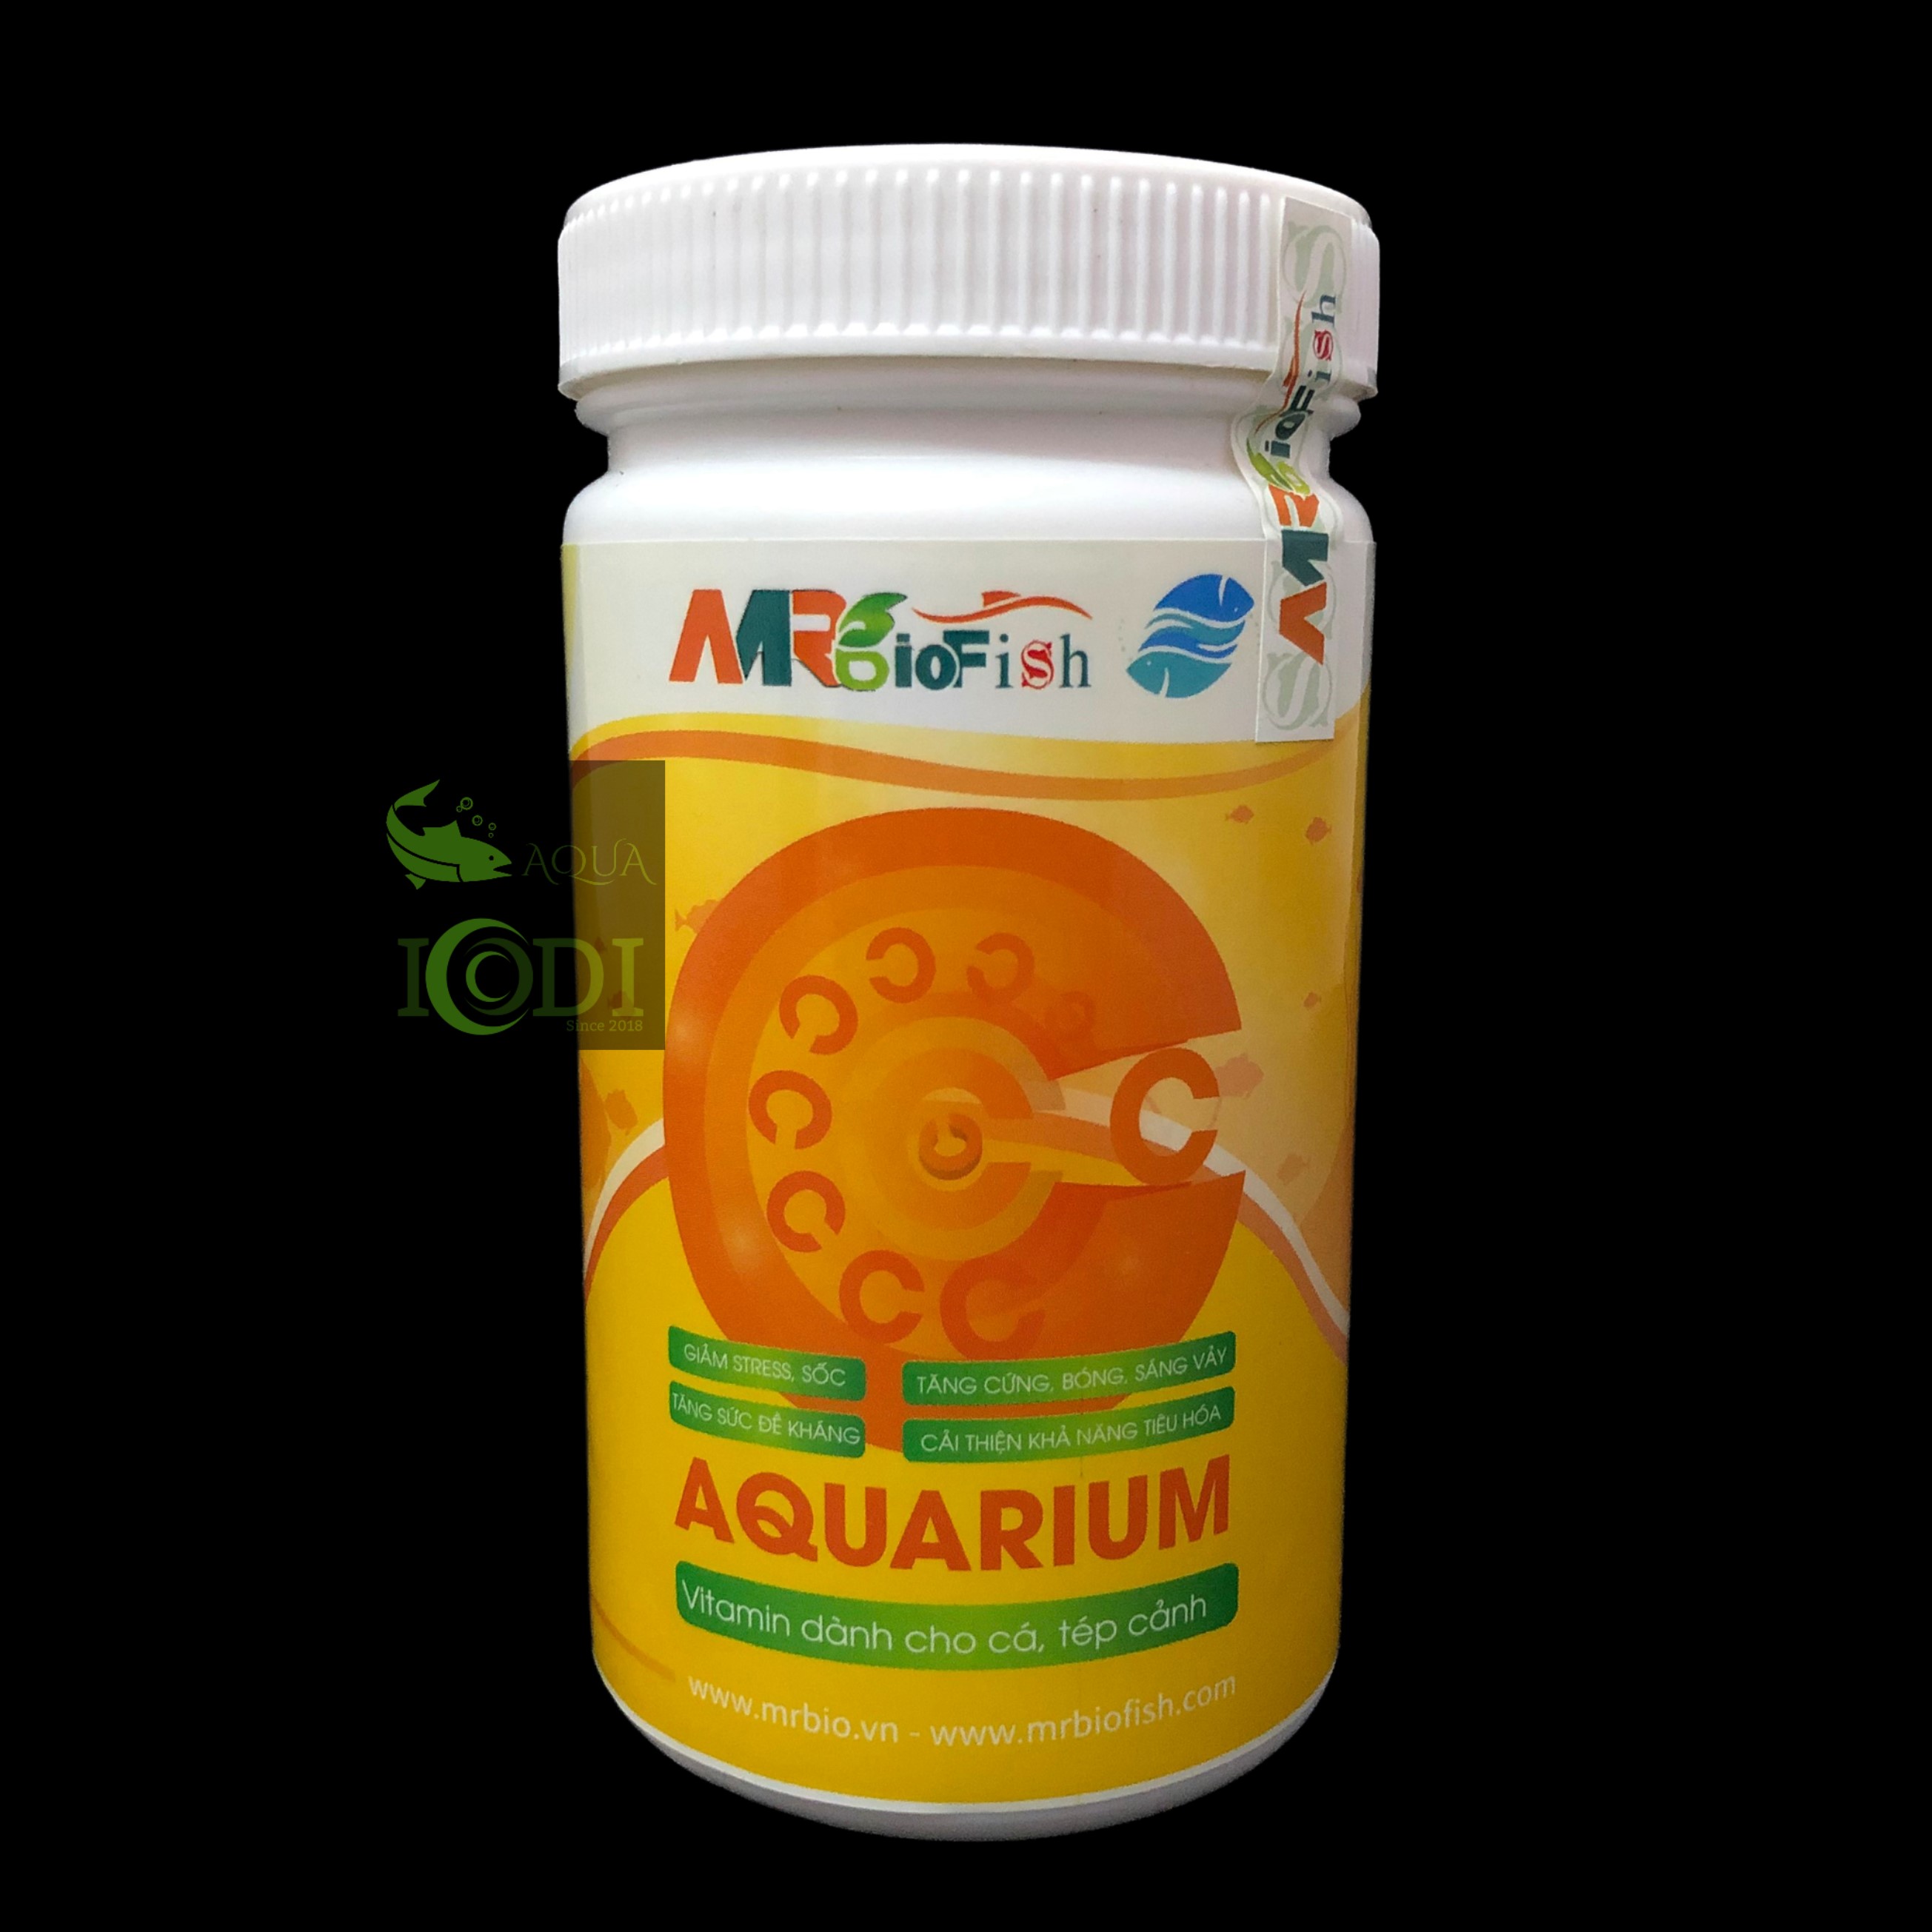 mrbiofish-c-aquarium